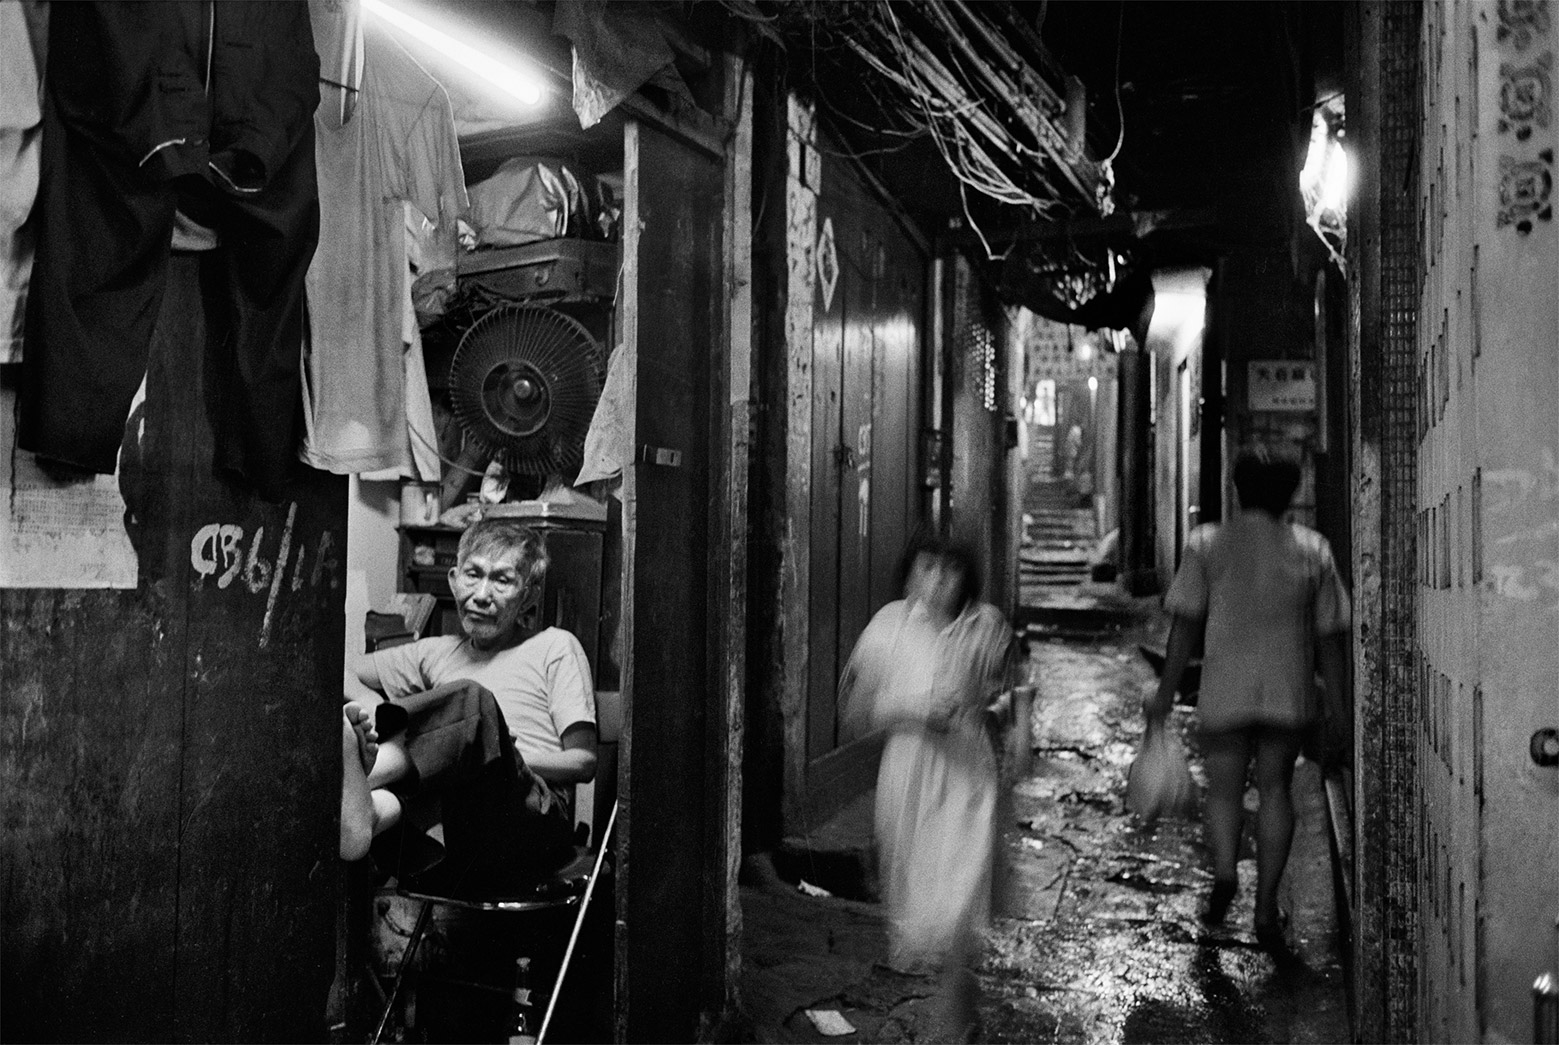 The Walled City,  Kowloon, Hong Kong, 1988.